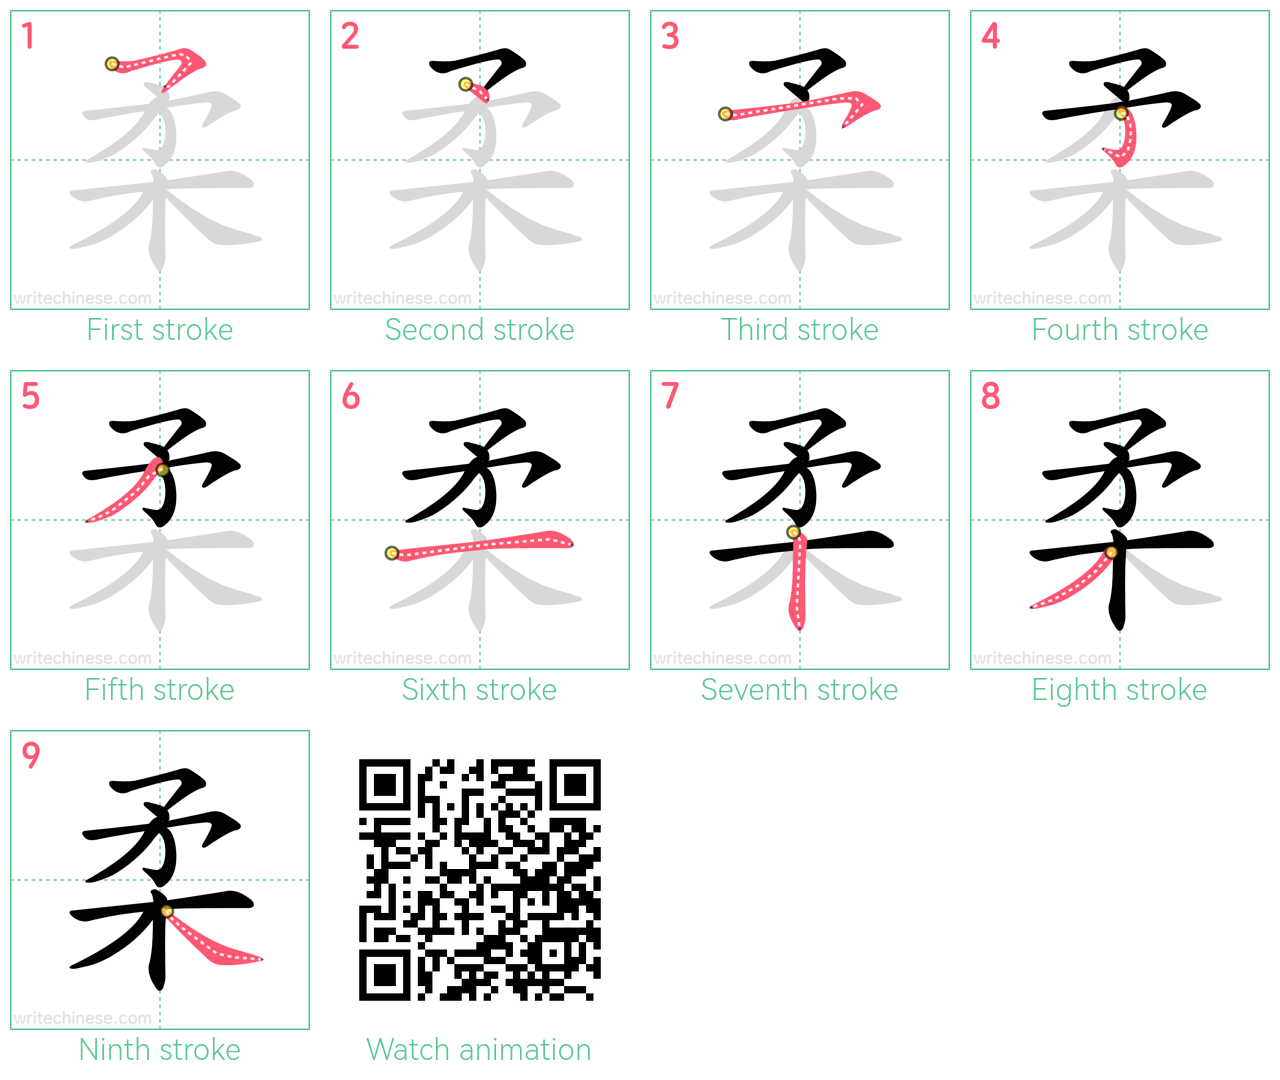 柔 step-by-step stroke order diagrams